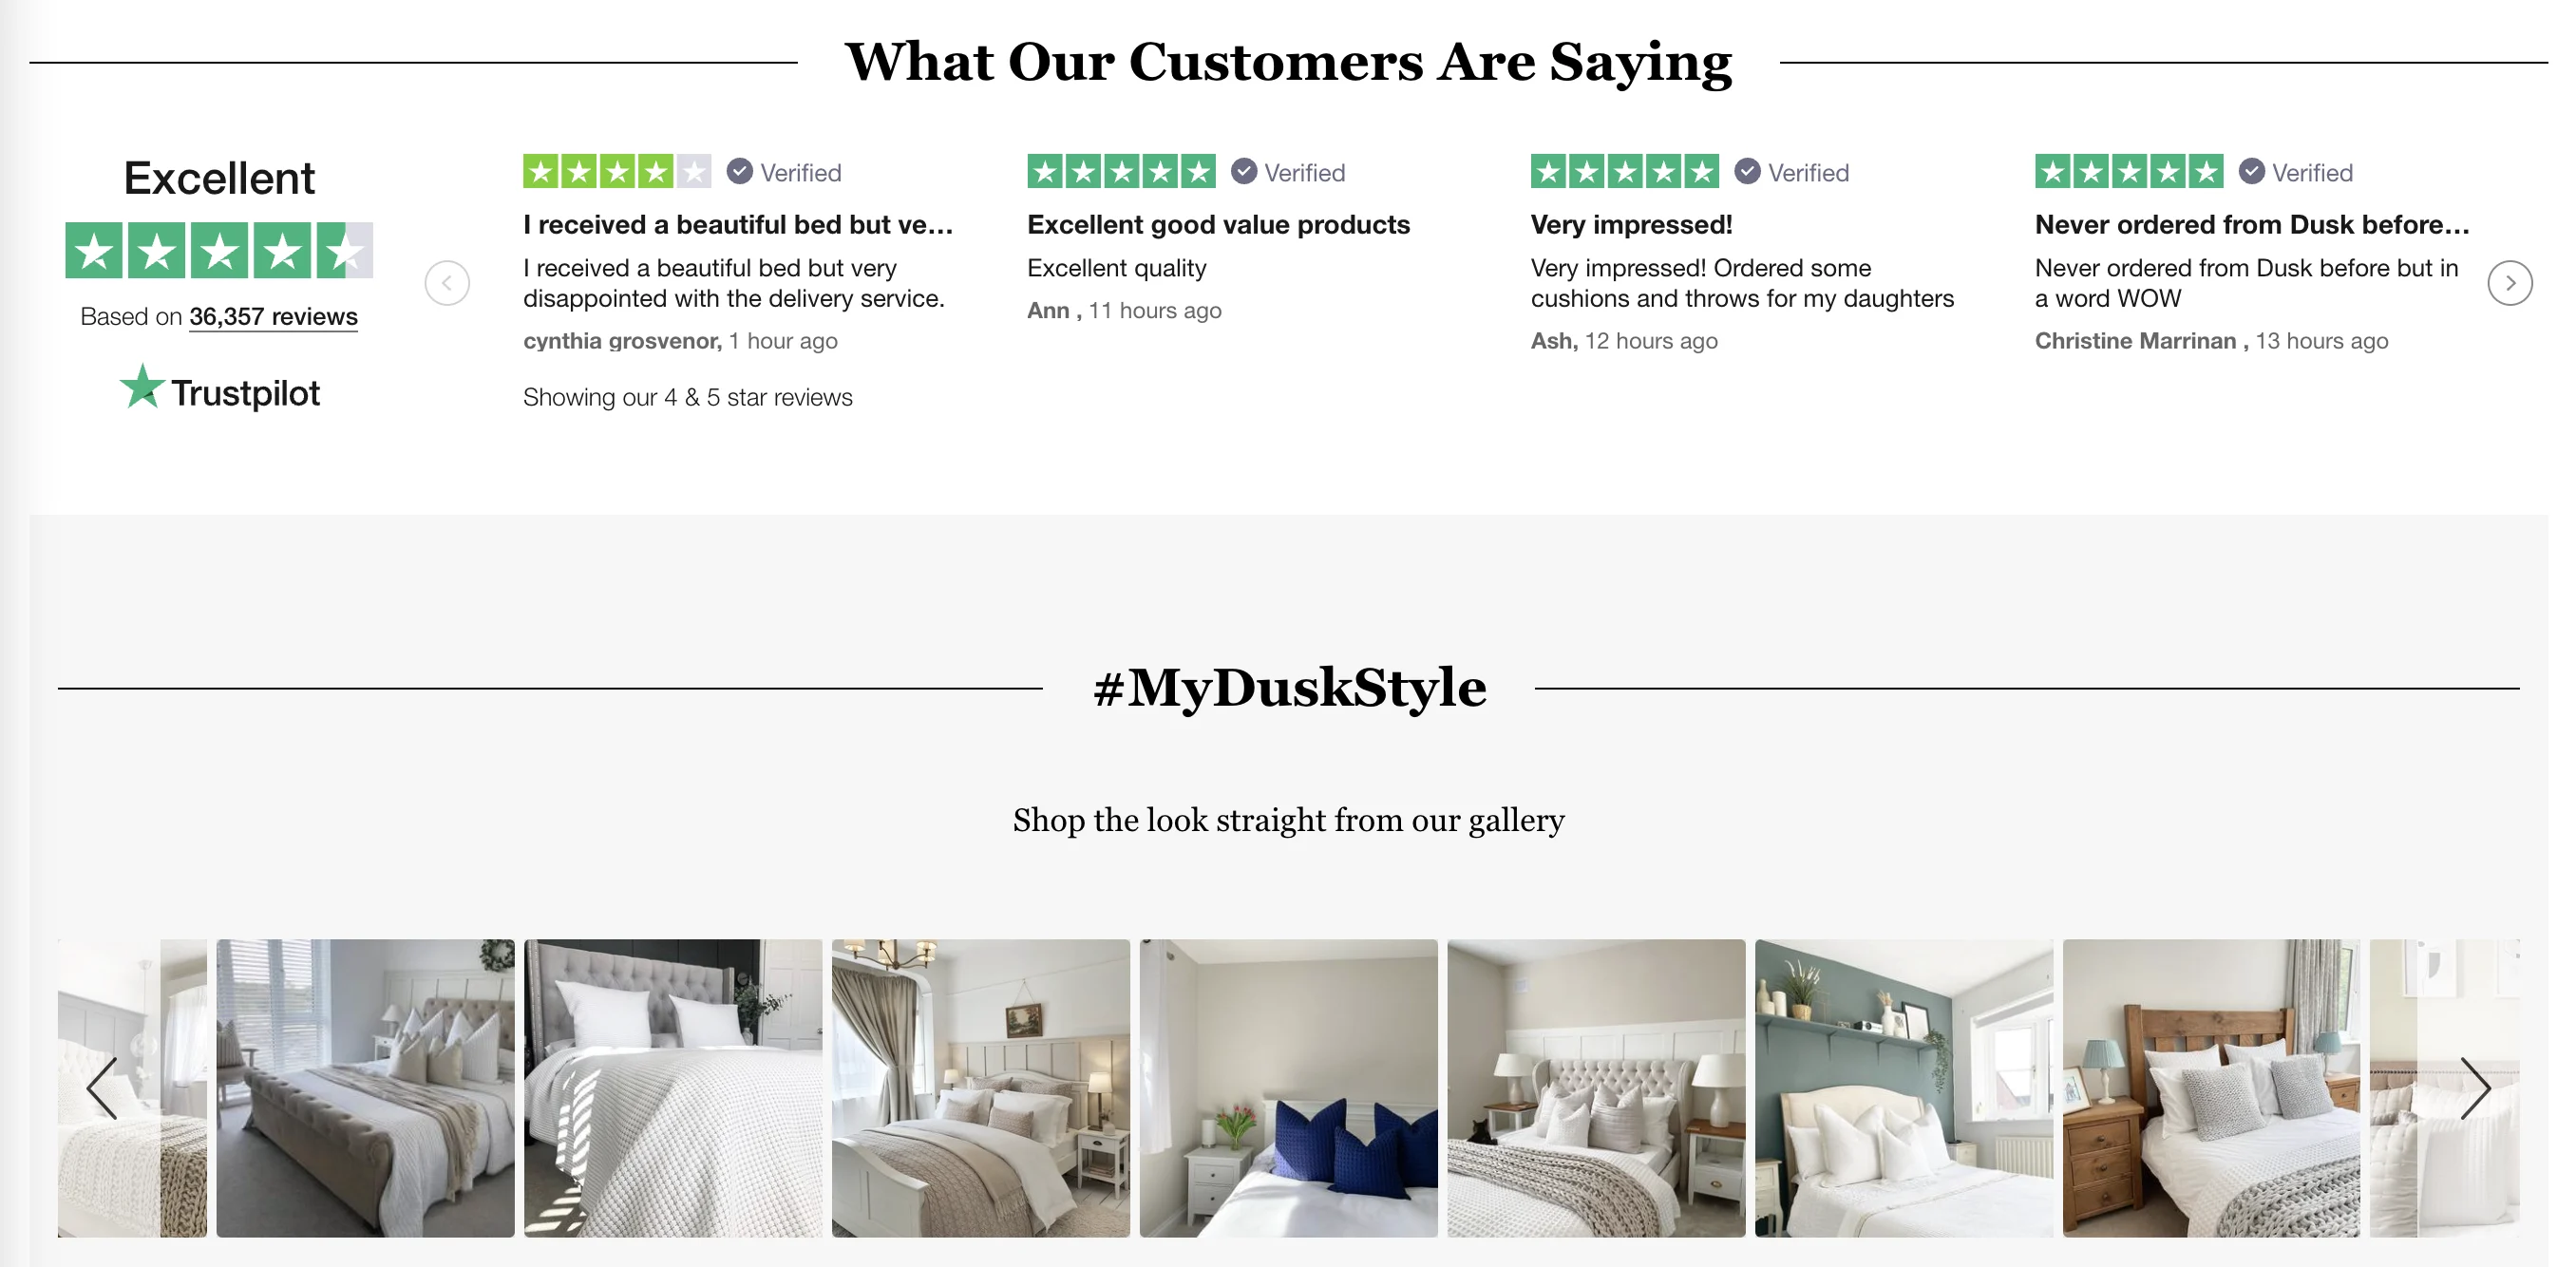 Dusk.com showcase Trustpilot reviews throughout their website